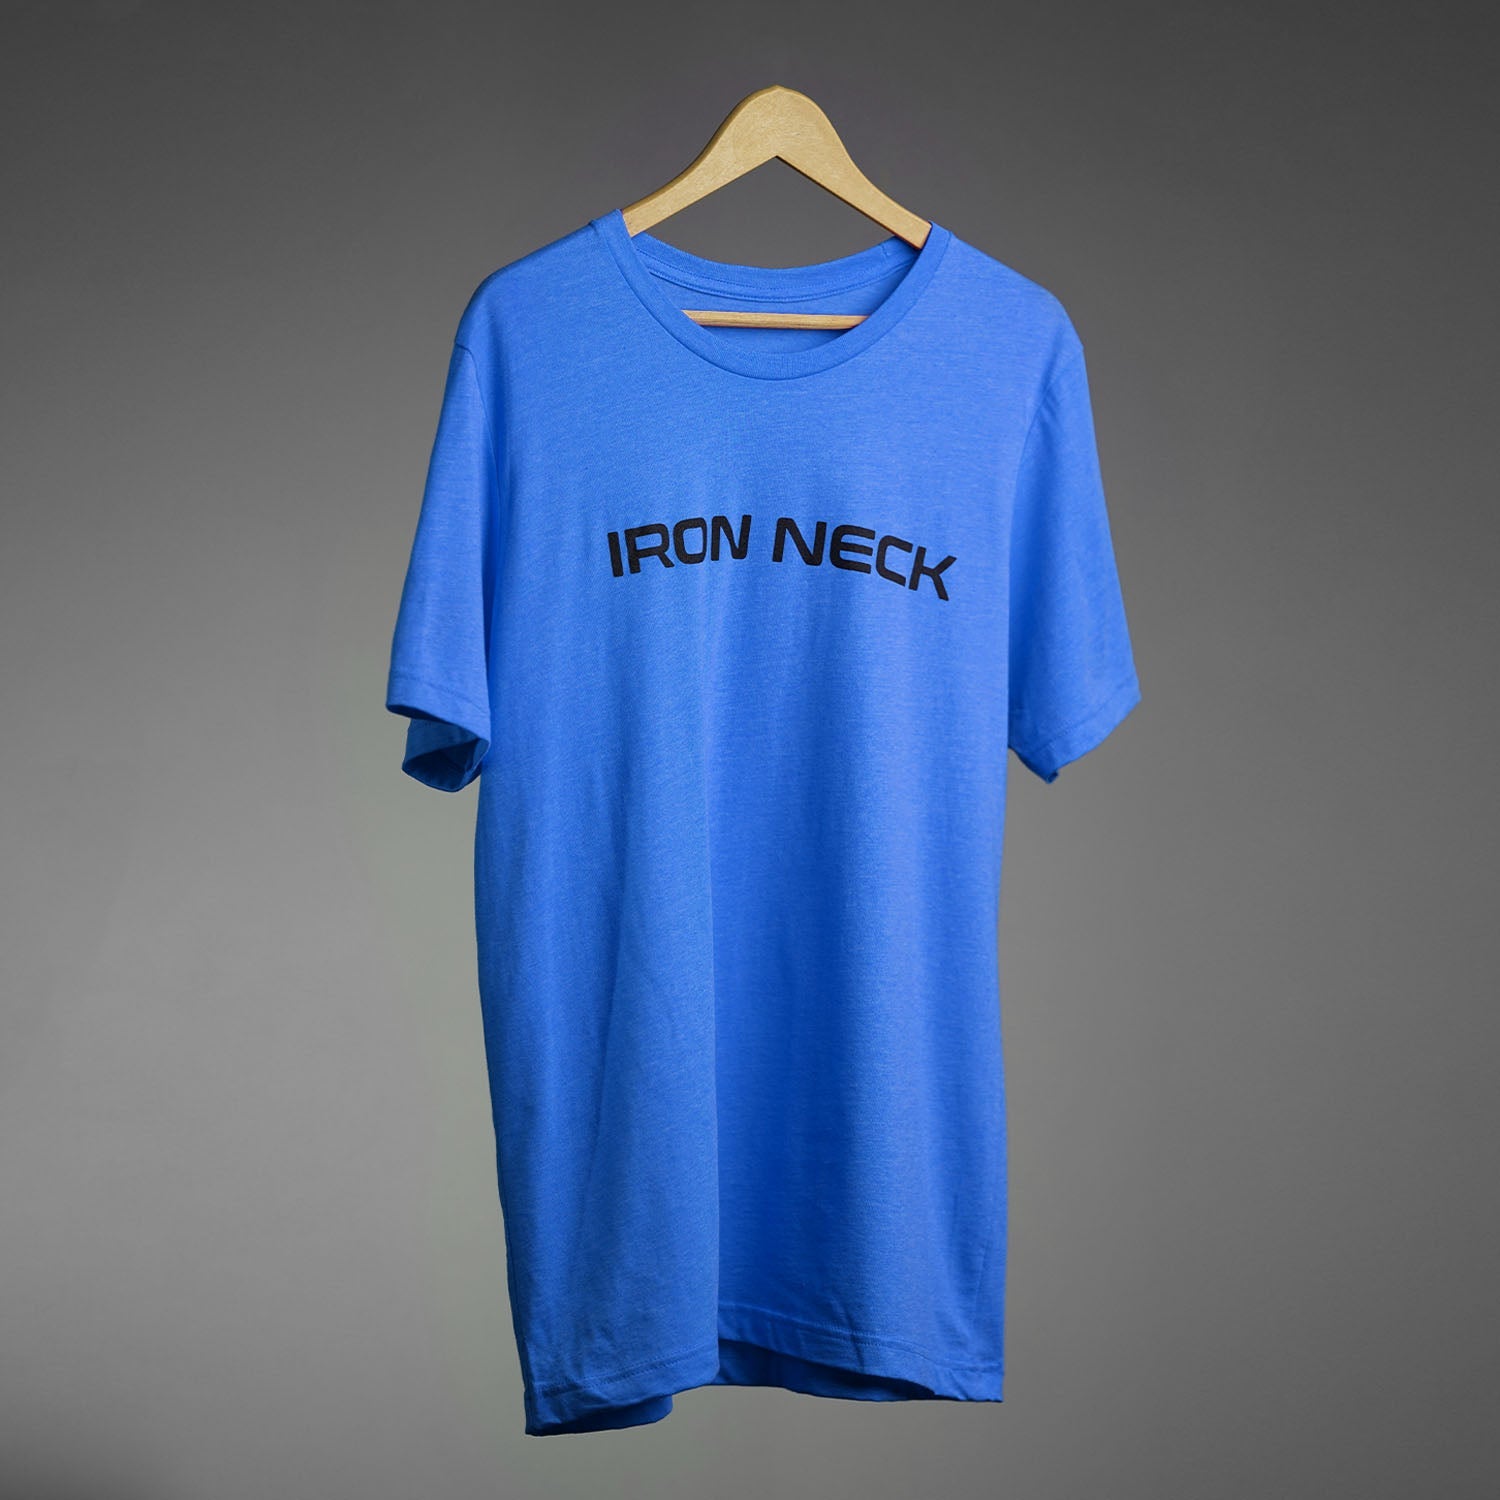 Iron Neck 'Got Neck?' Shirt